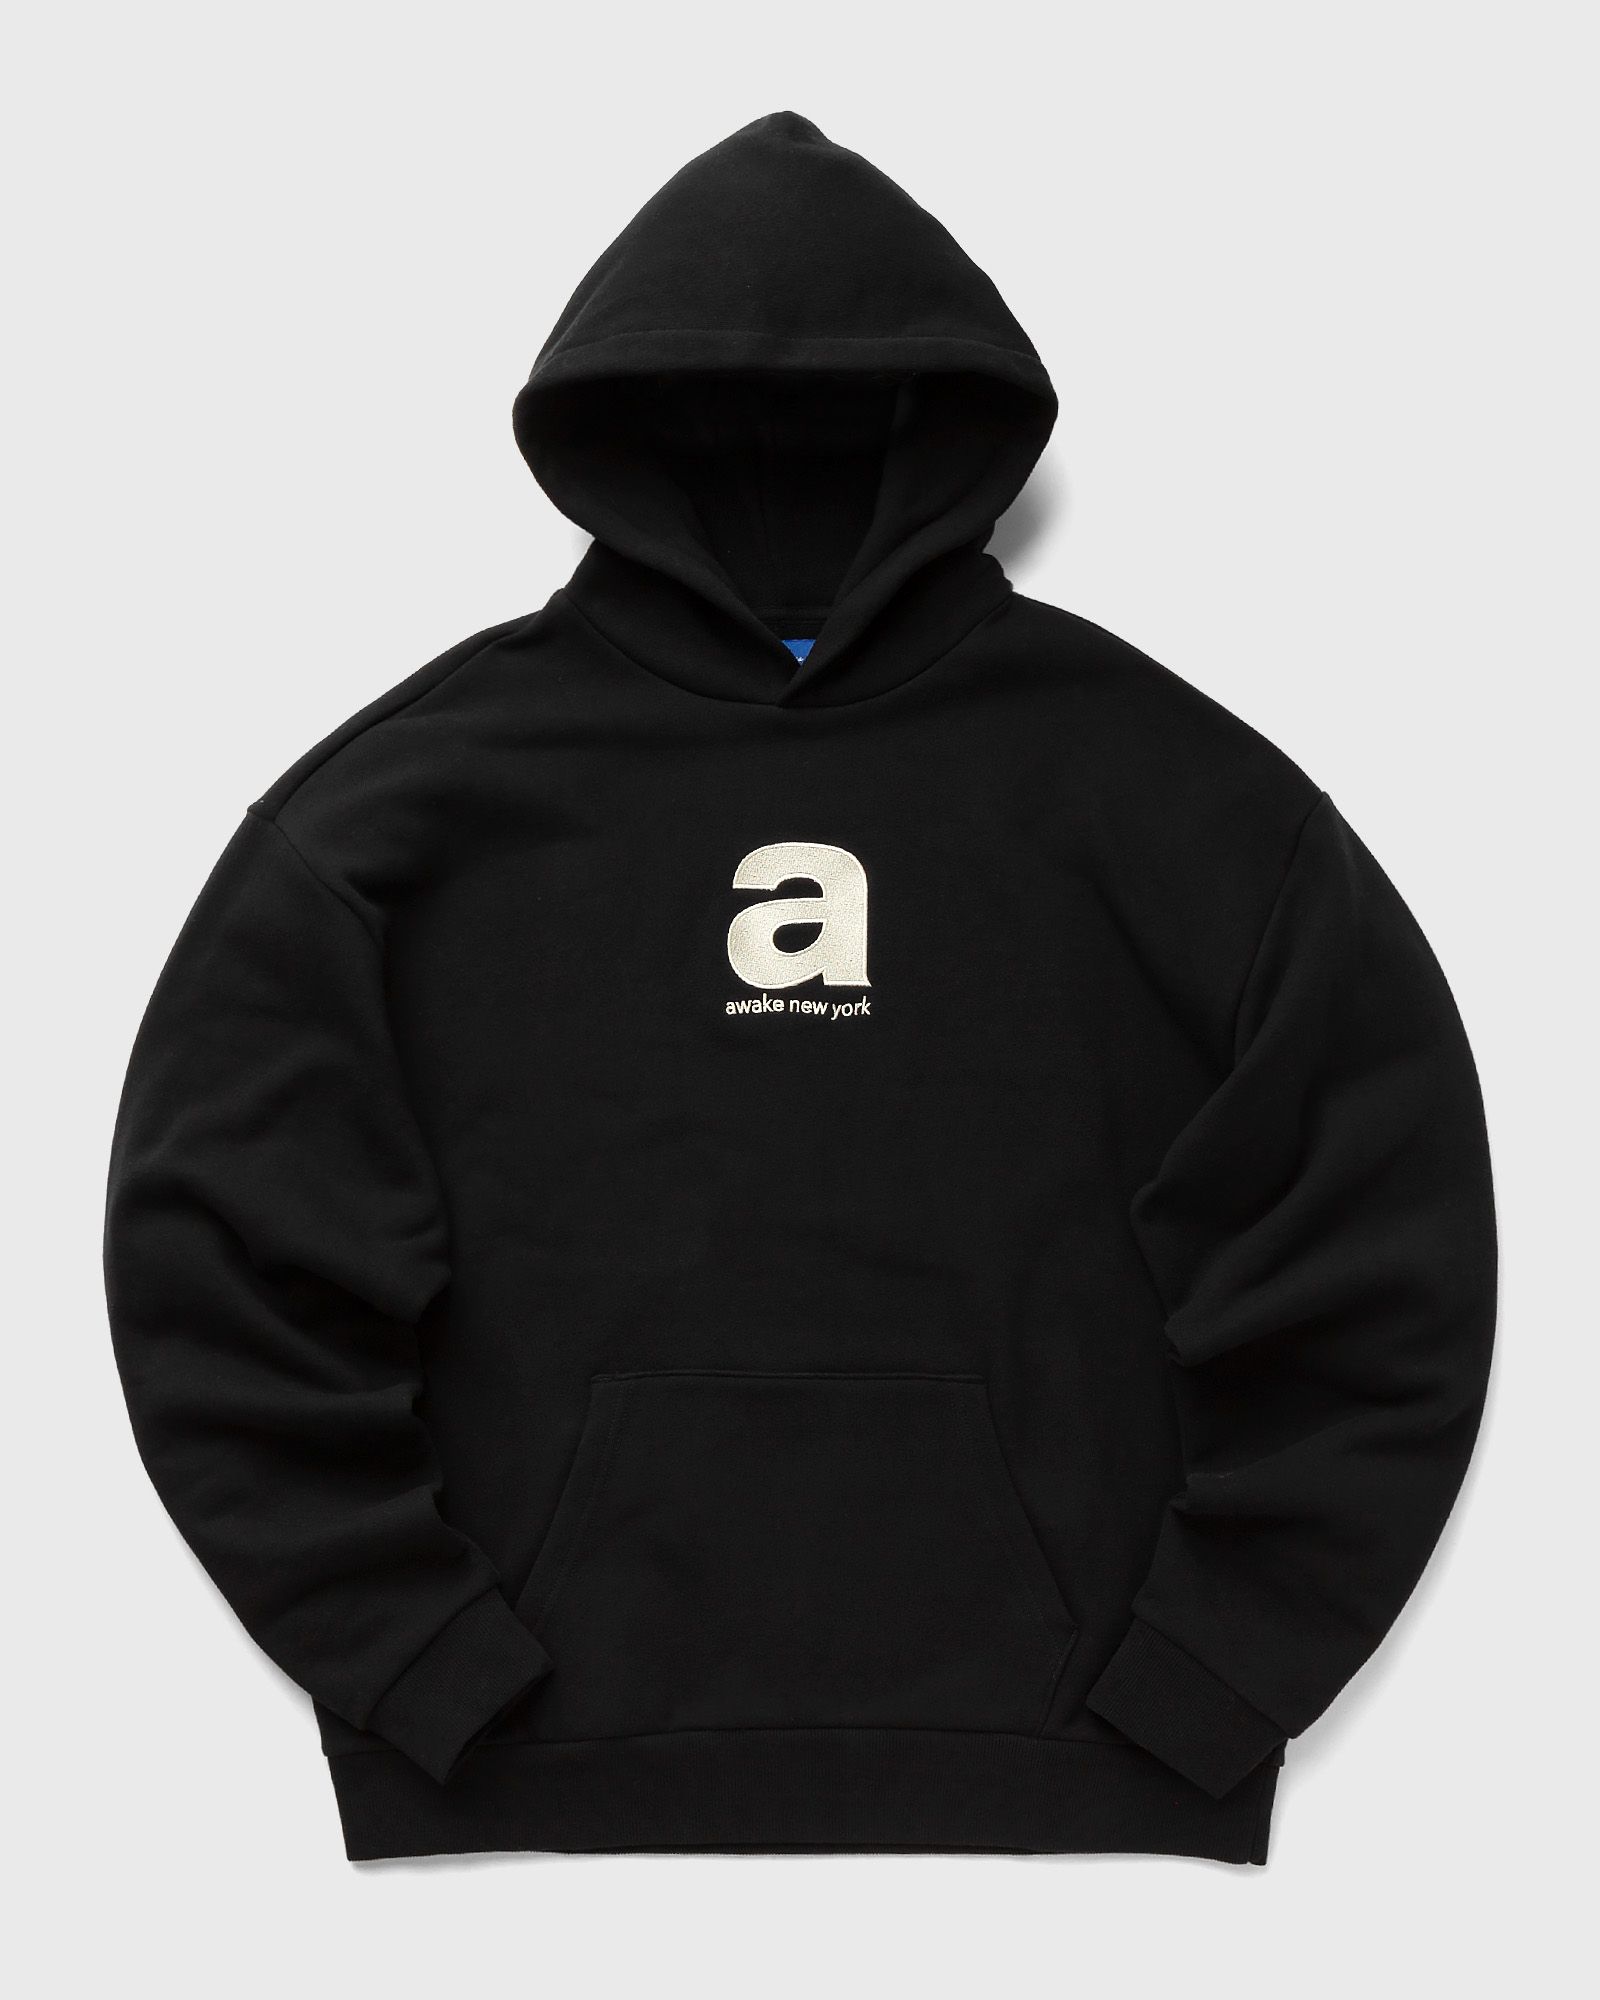 Awake - bold hoodie men hoodies black in größe:xl